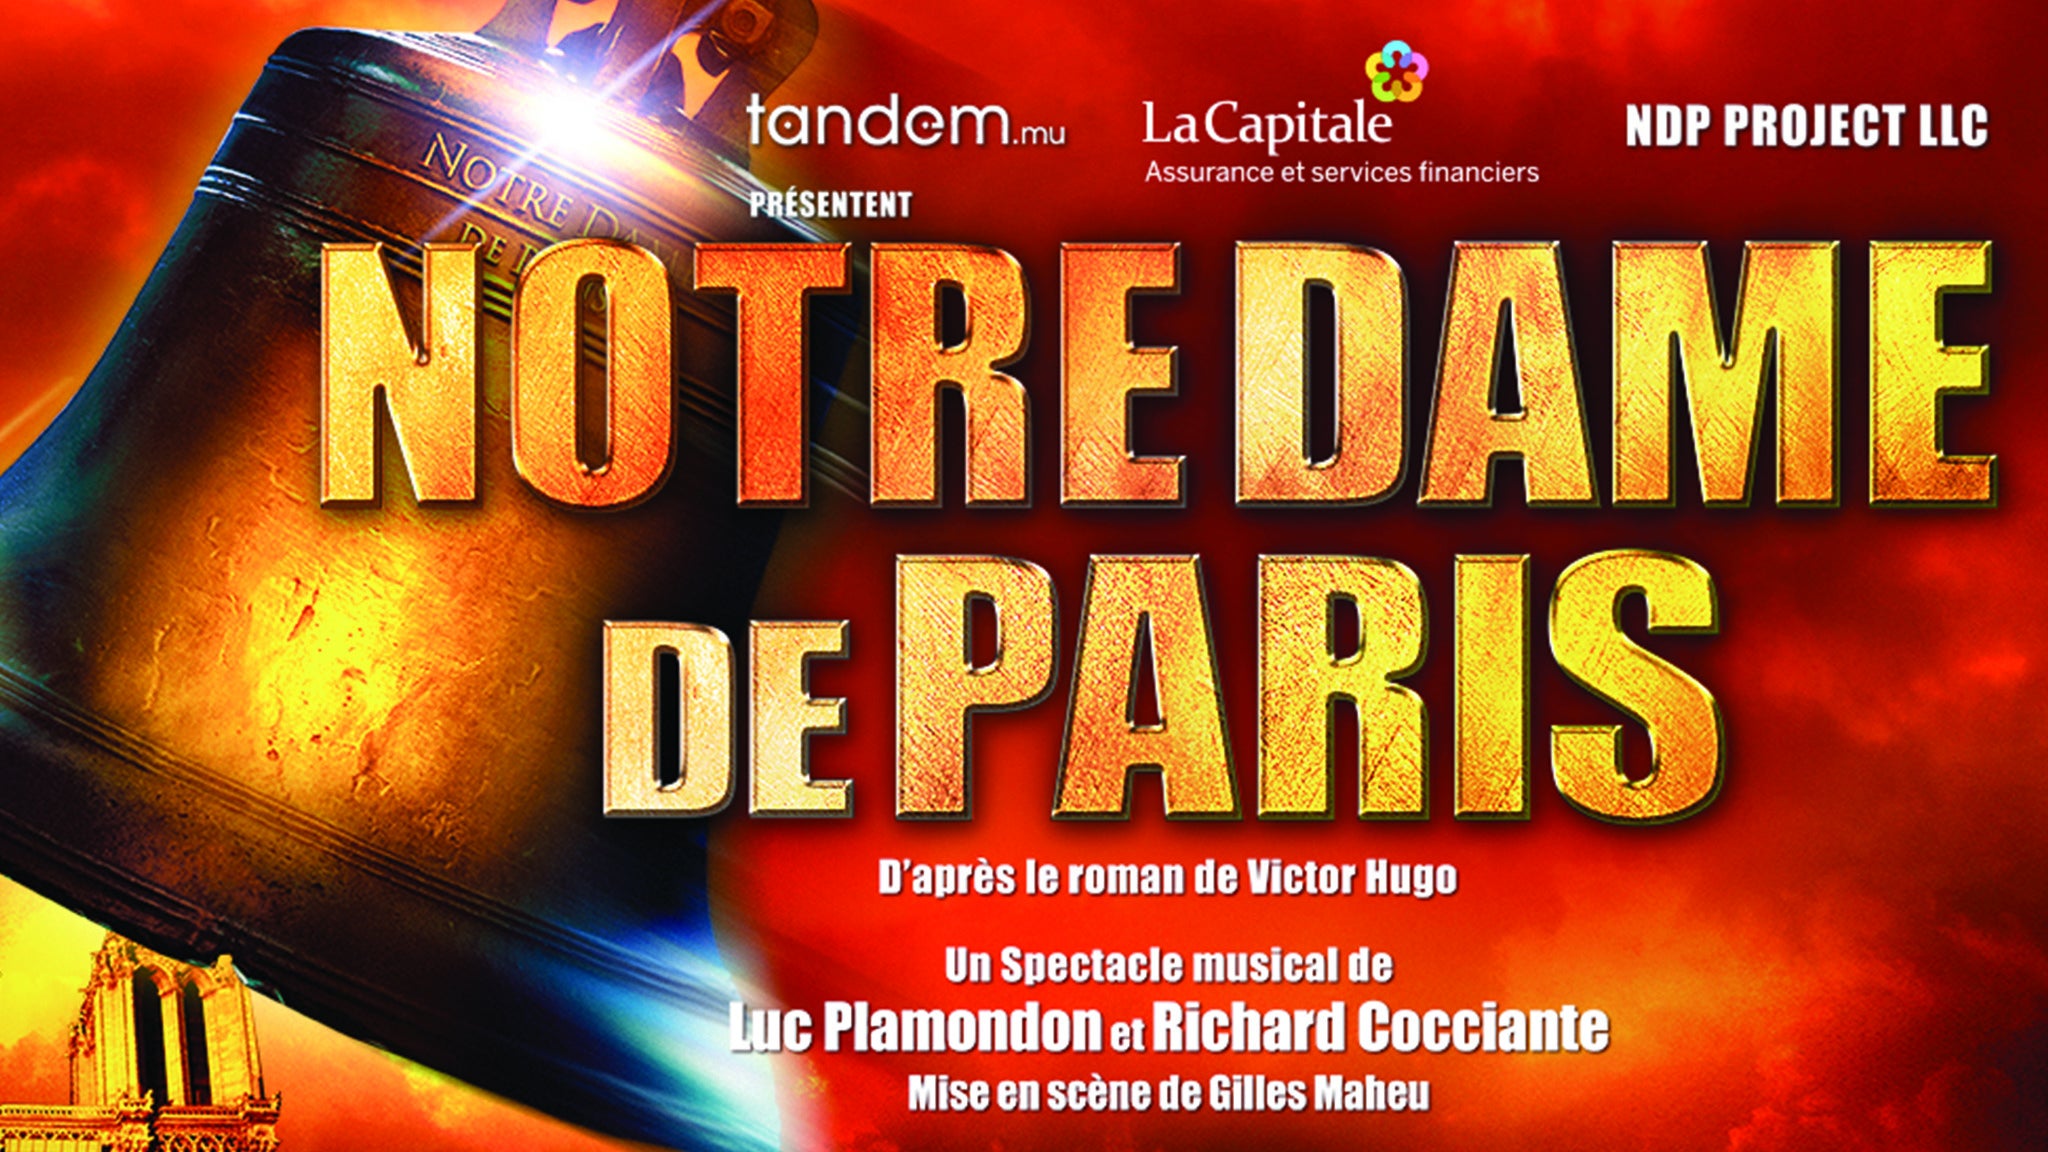 Notre Dame de Paris in Moncton promo photo for CAFI  presale offer code